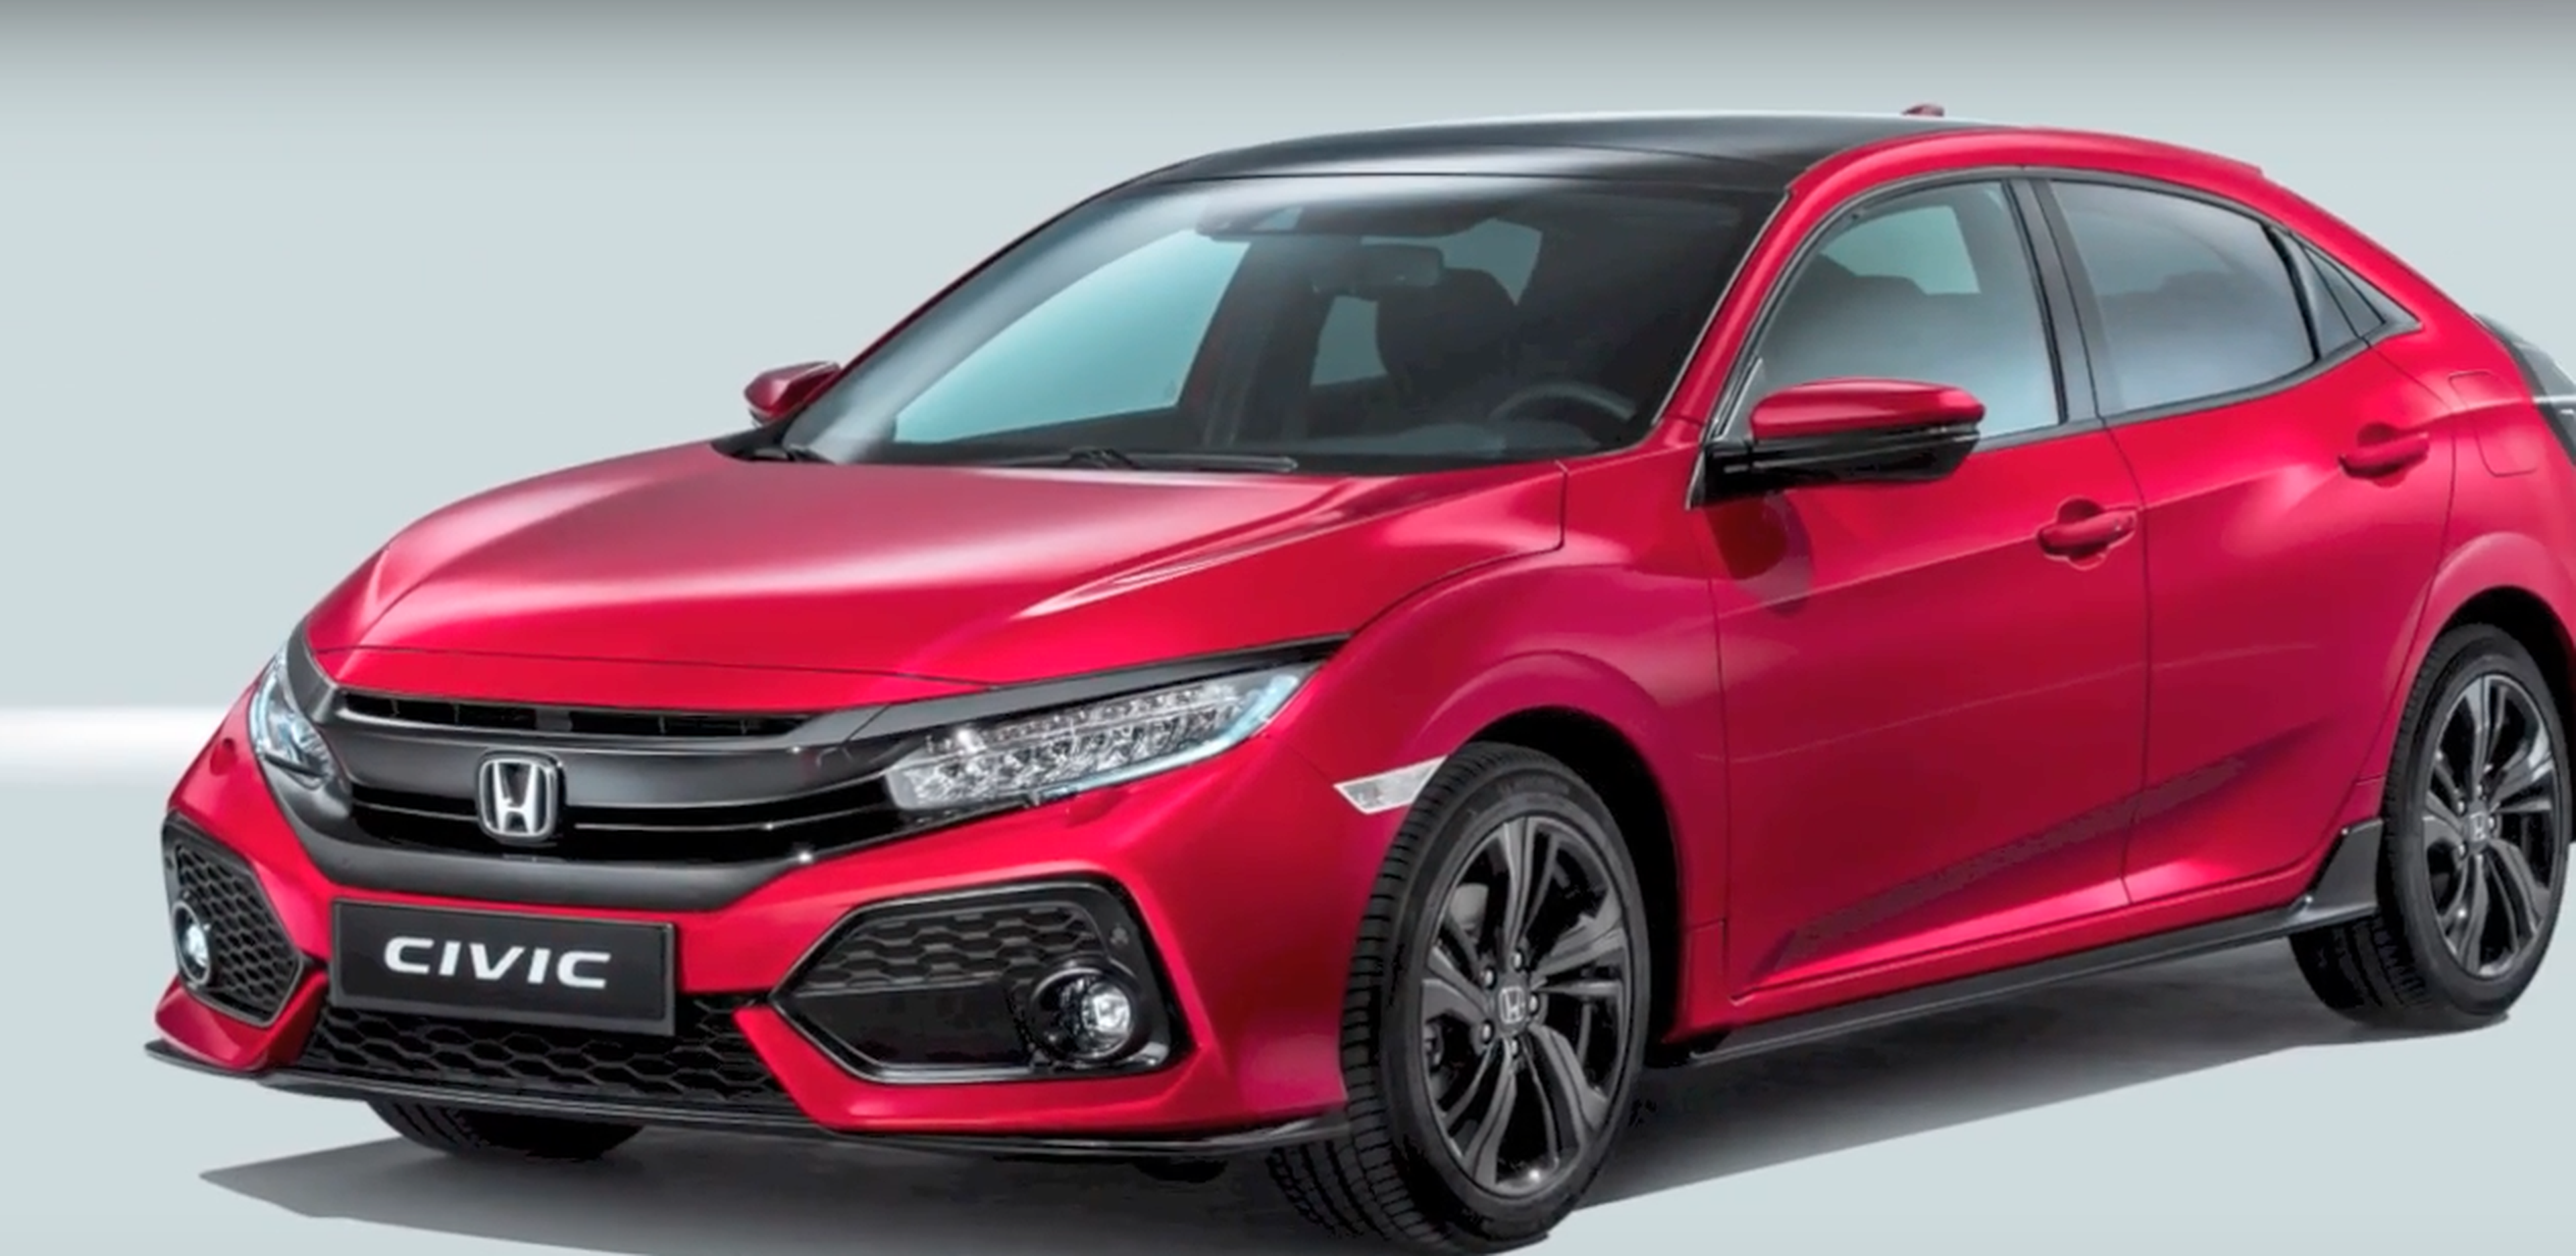 VÍDEO: Honda Civic Hatchback 2017, ¡conócelo en 40 segundos!